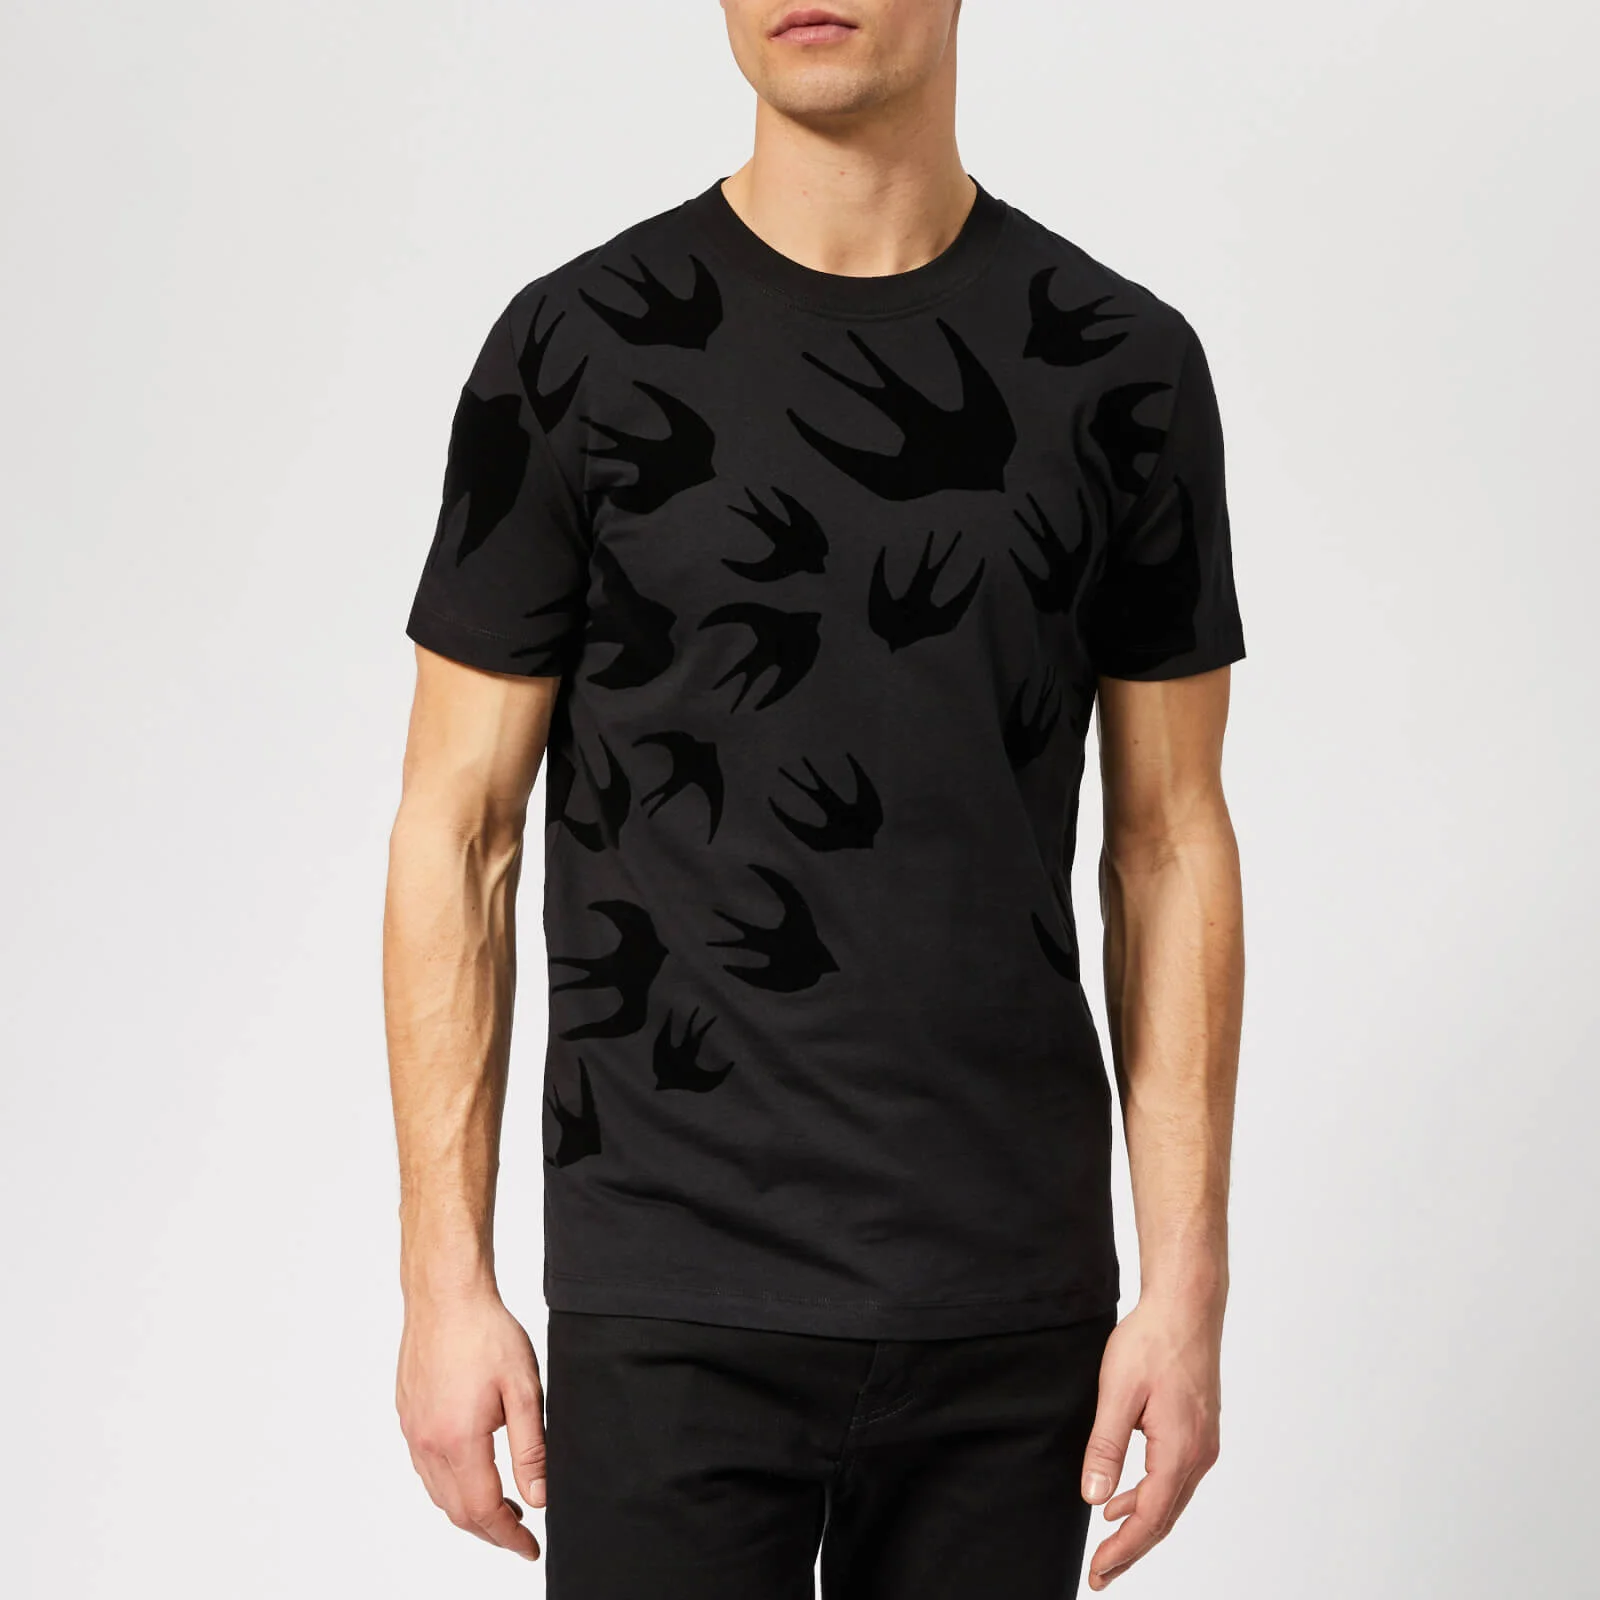 McQ Alexander McQueen Men's Swallow Swarm T-Shirt - Darkest Black Image 1